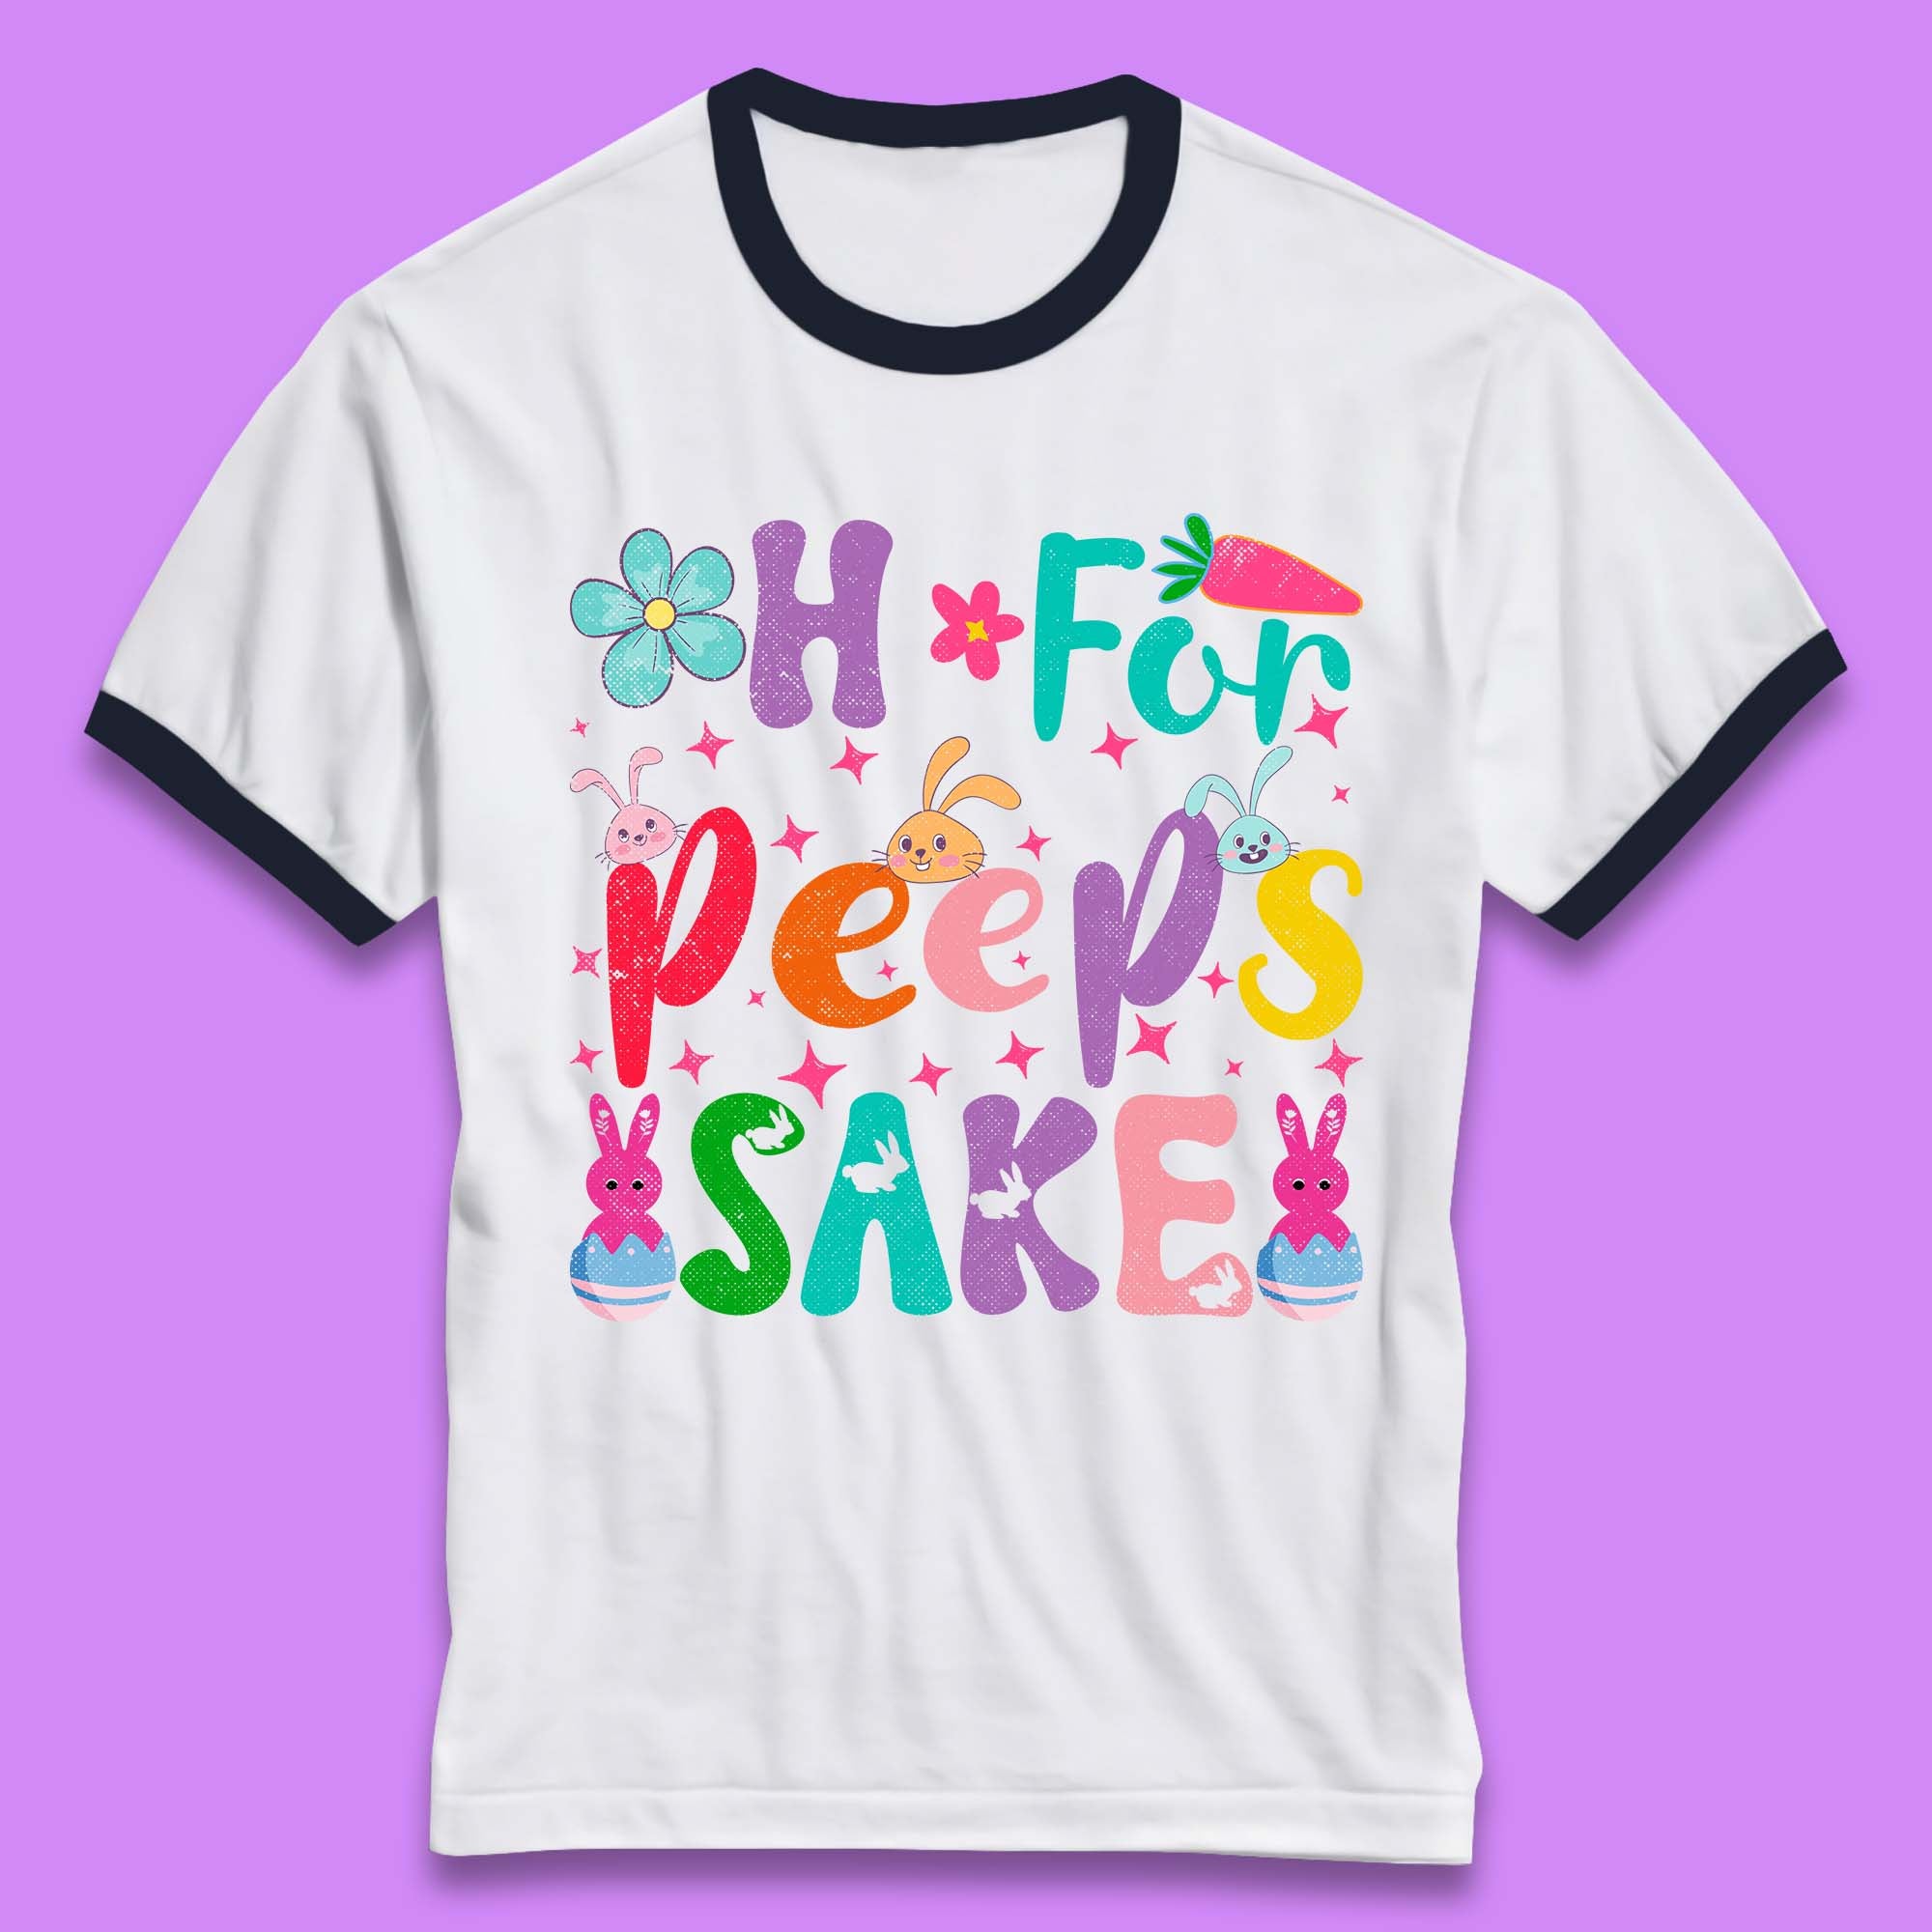 For Peeps Sake Ringer T-Shirt